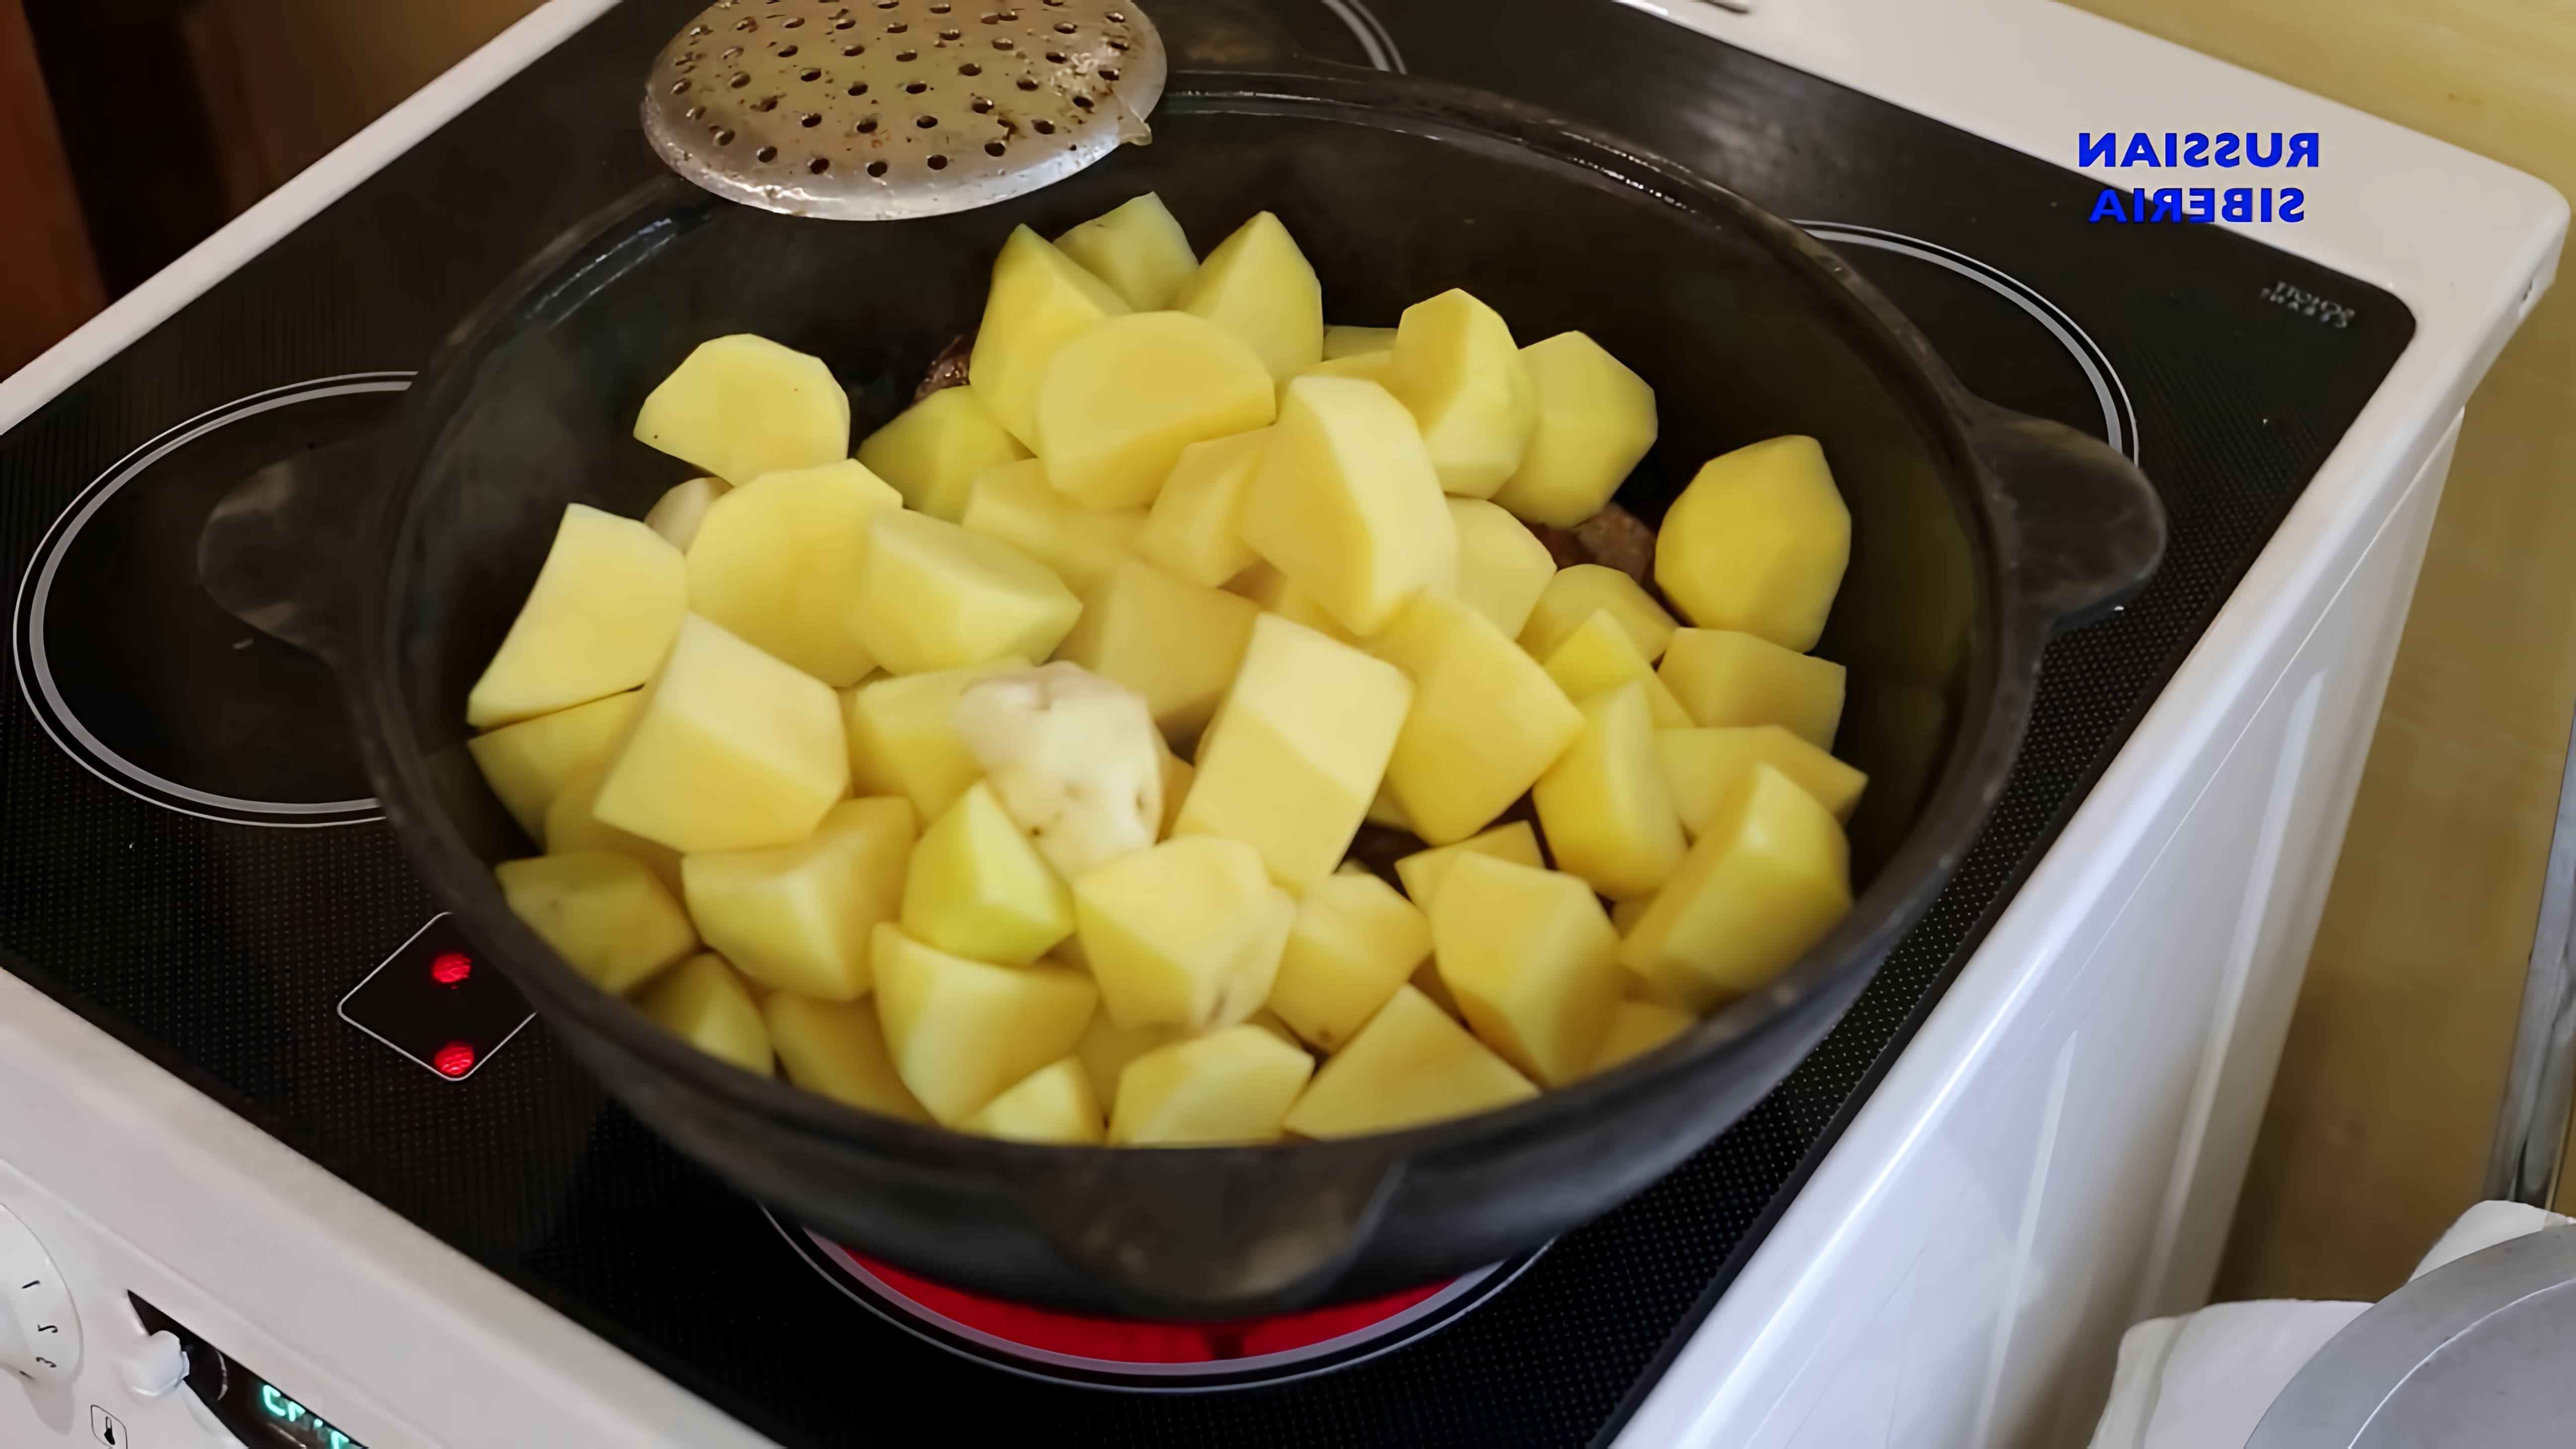 В этом видео демонстрируется процесс приготовления тушеной картошки с мясом в казане